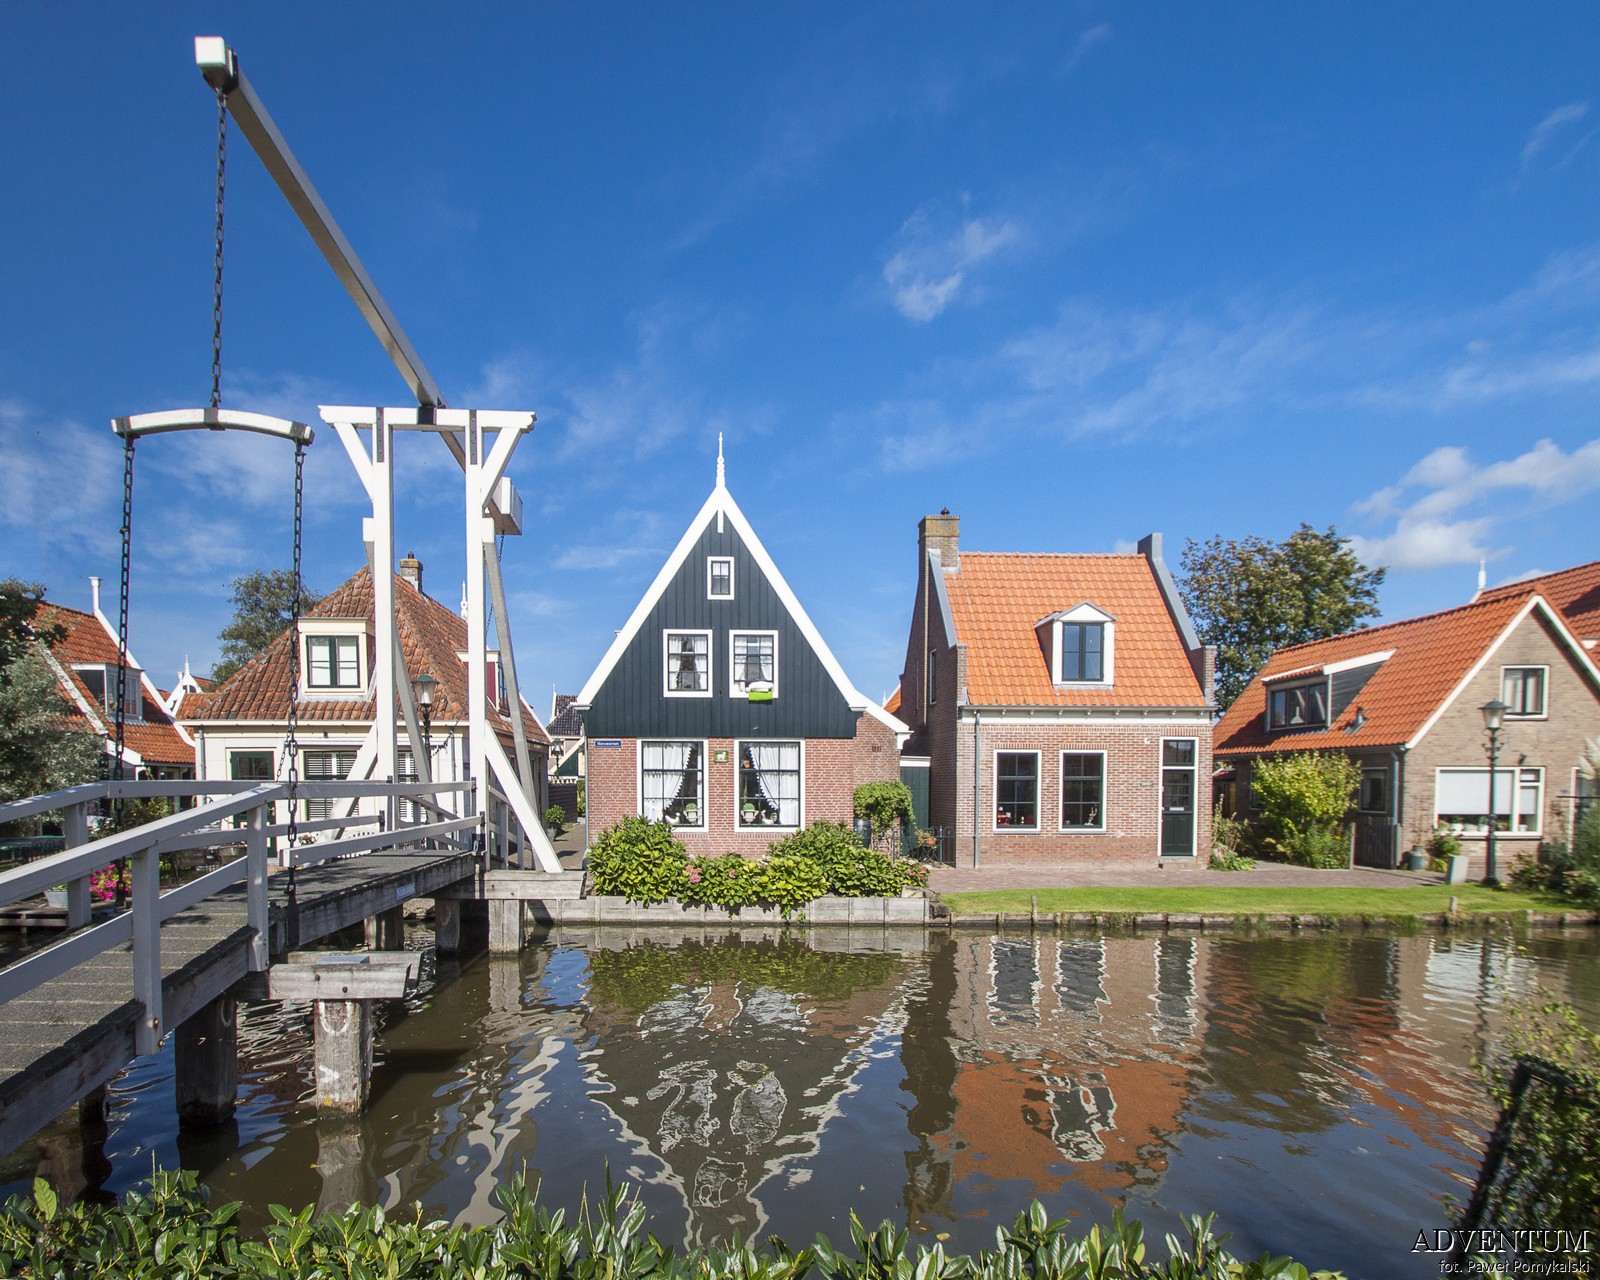 Holandia De Rijp Atrakcje Zwiedzanie co Zobaczyć Amsterdam Rotterdam Haga Kanały Wiatraki